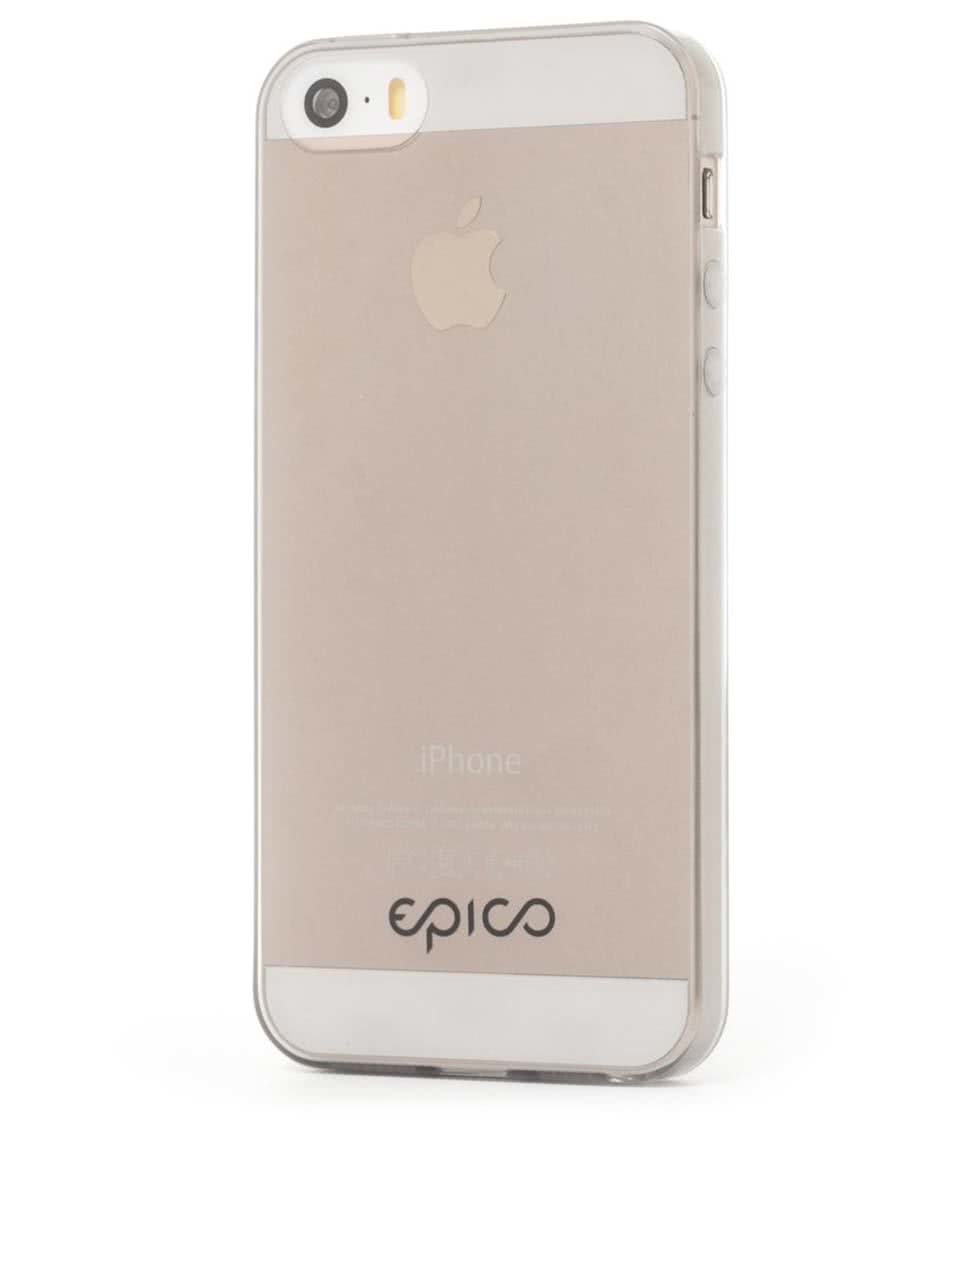 Šedý ultratenký transparentní kryt na iPhone 5/5s Epico Twiggy Gloss